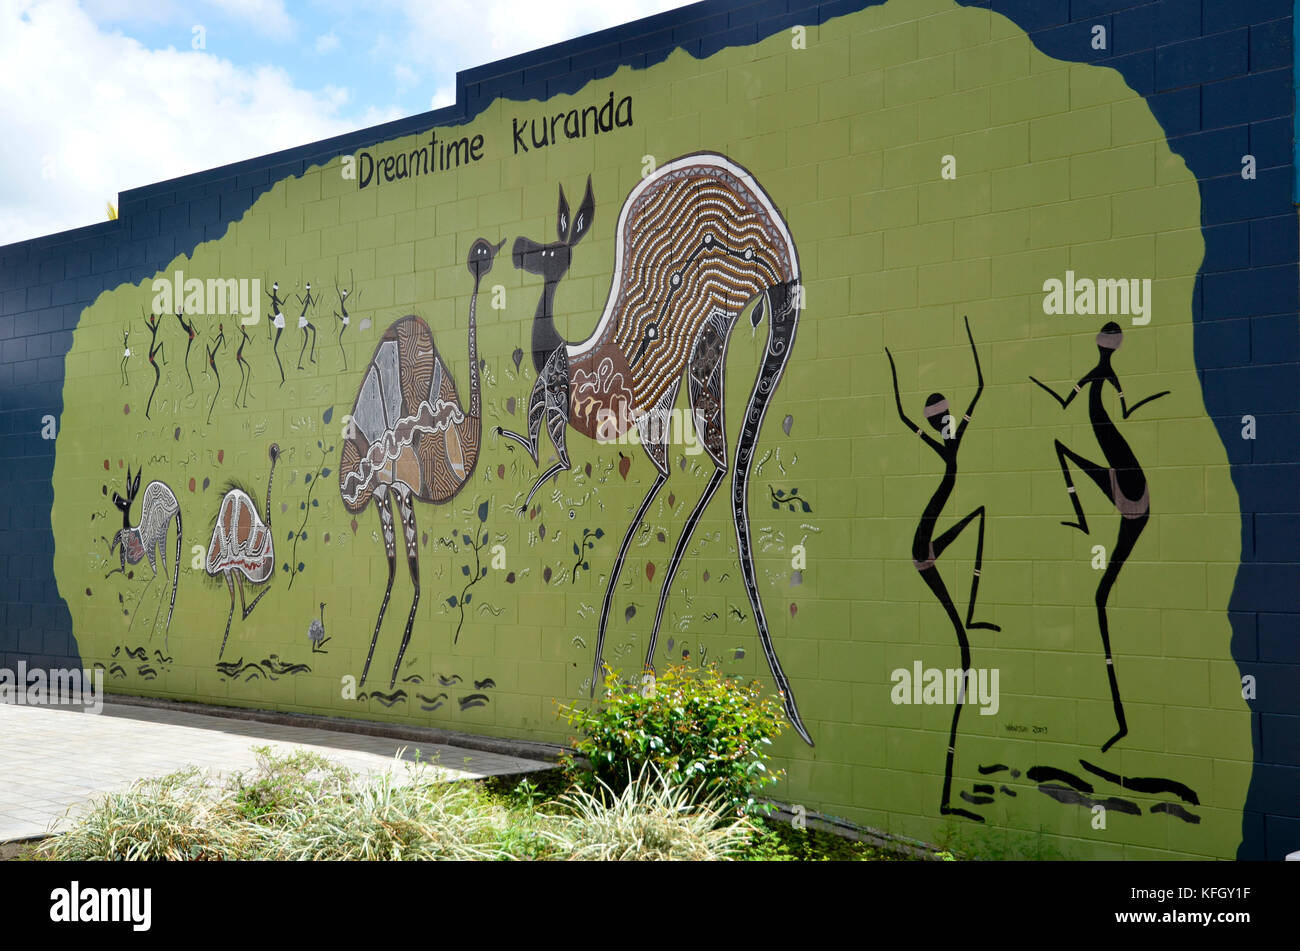 L'Art autochtone sur un mur à Kuranda, Queensland du nord, Australie Banque D'Images